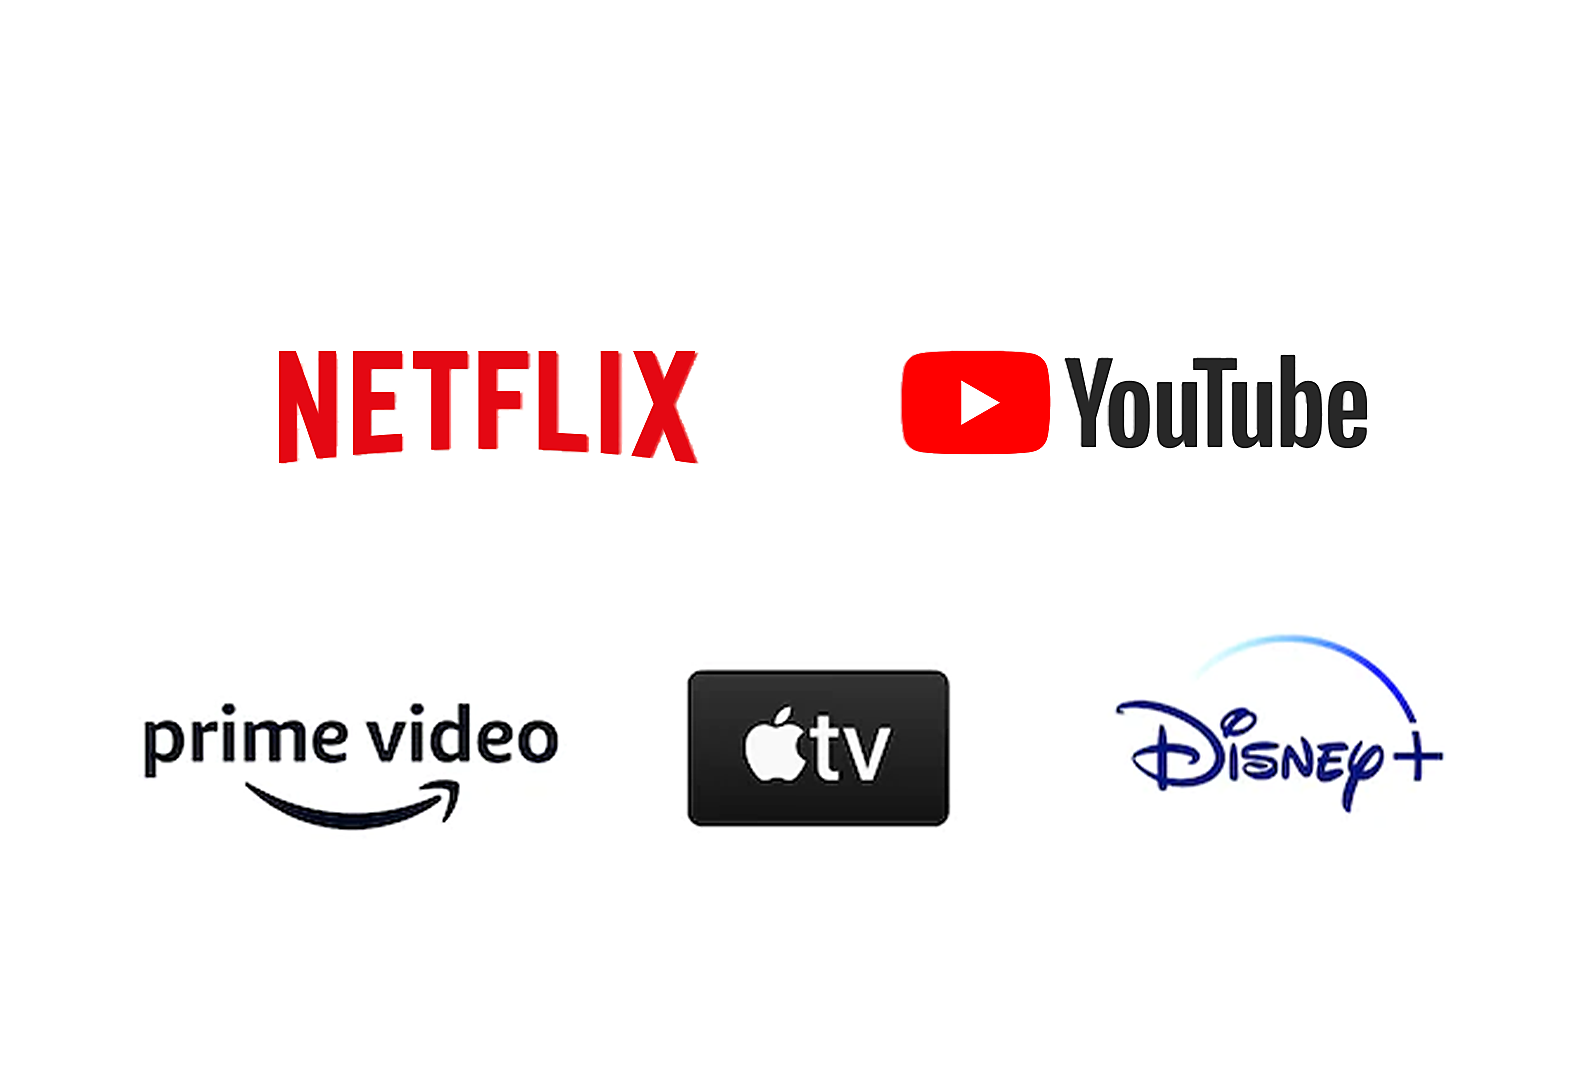 Λογότυπα Netflix, YouTube, Amazon prime video, Apple TV και Disney+